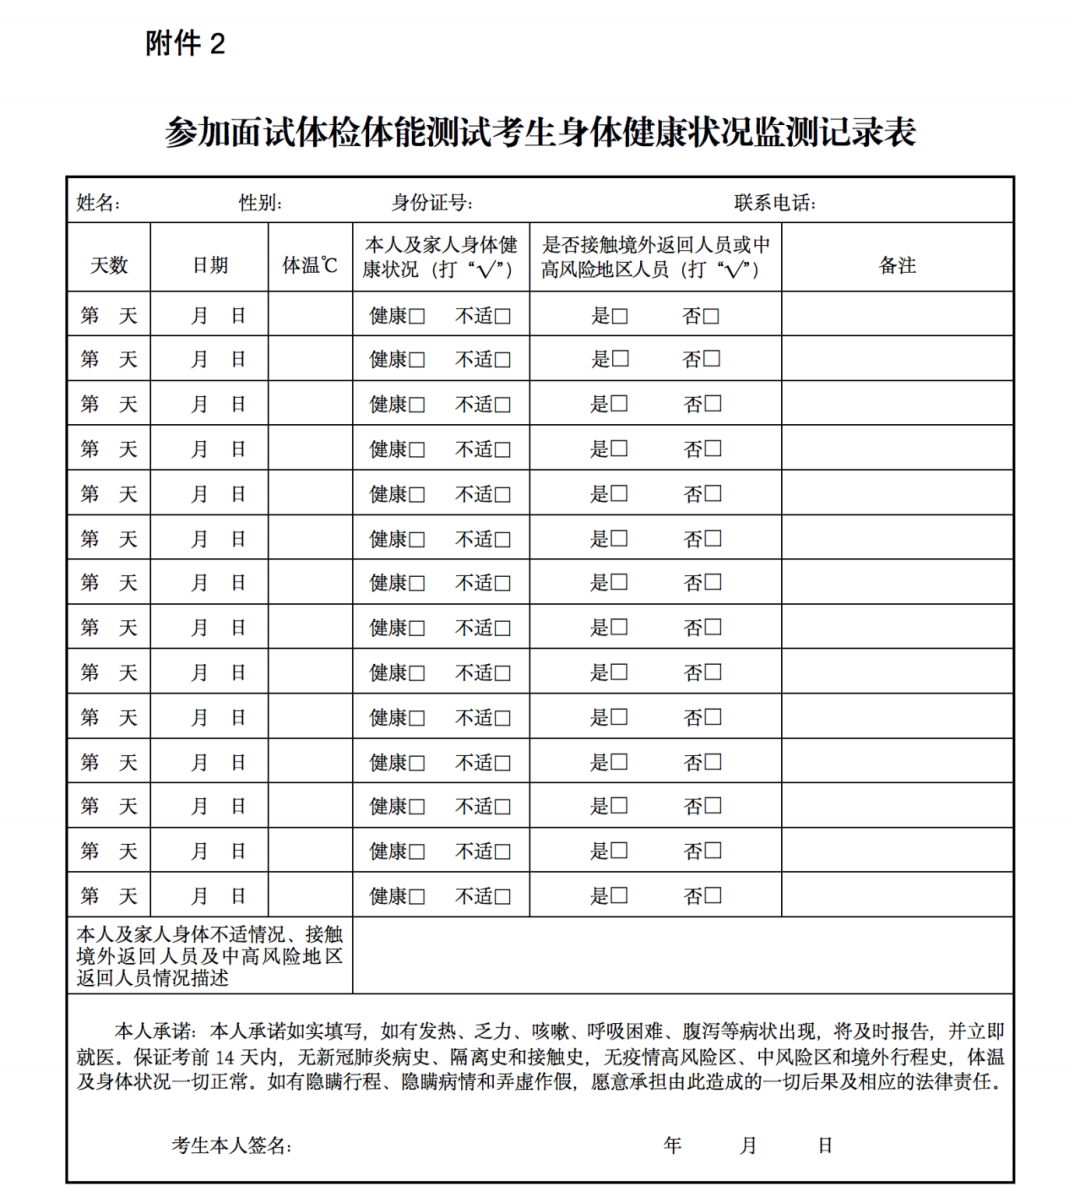 中央司法警官学院2021年在甘肃省招生面试、体检和体能测试公告